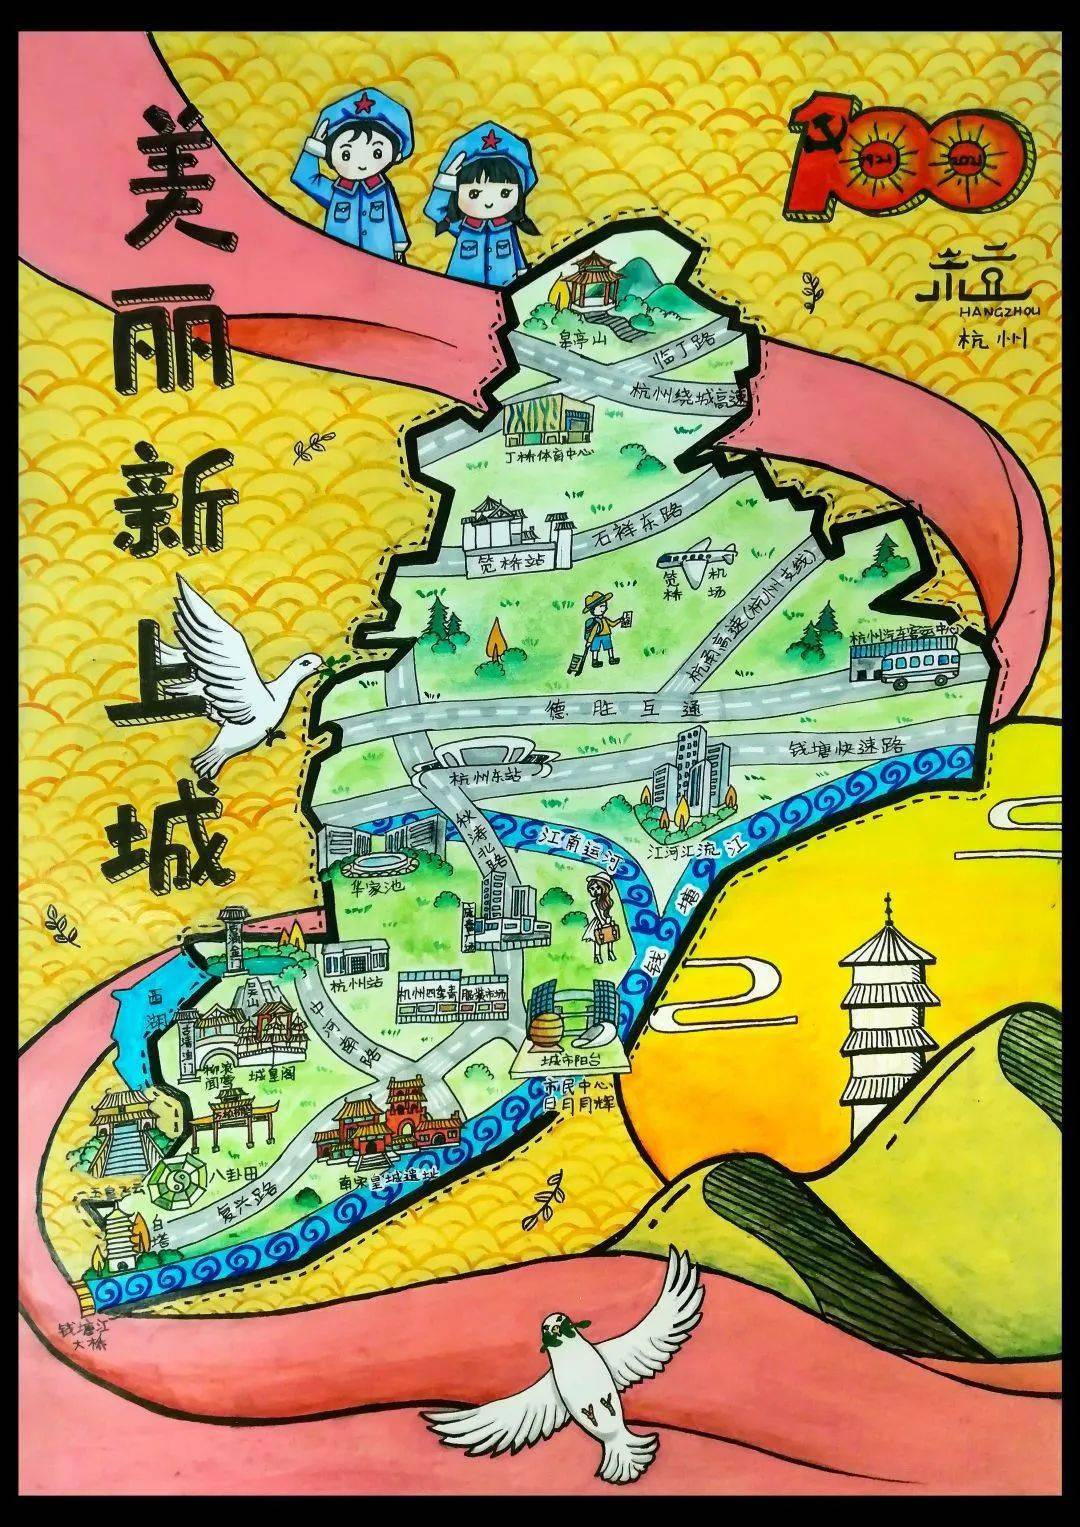 "美丽新上城"手绘地图,"我眼中的新上城"随手拍活动获奖名单新鲜出炉!